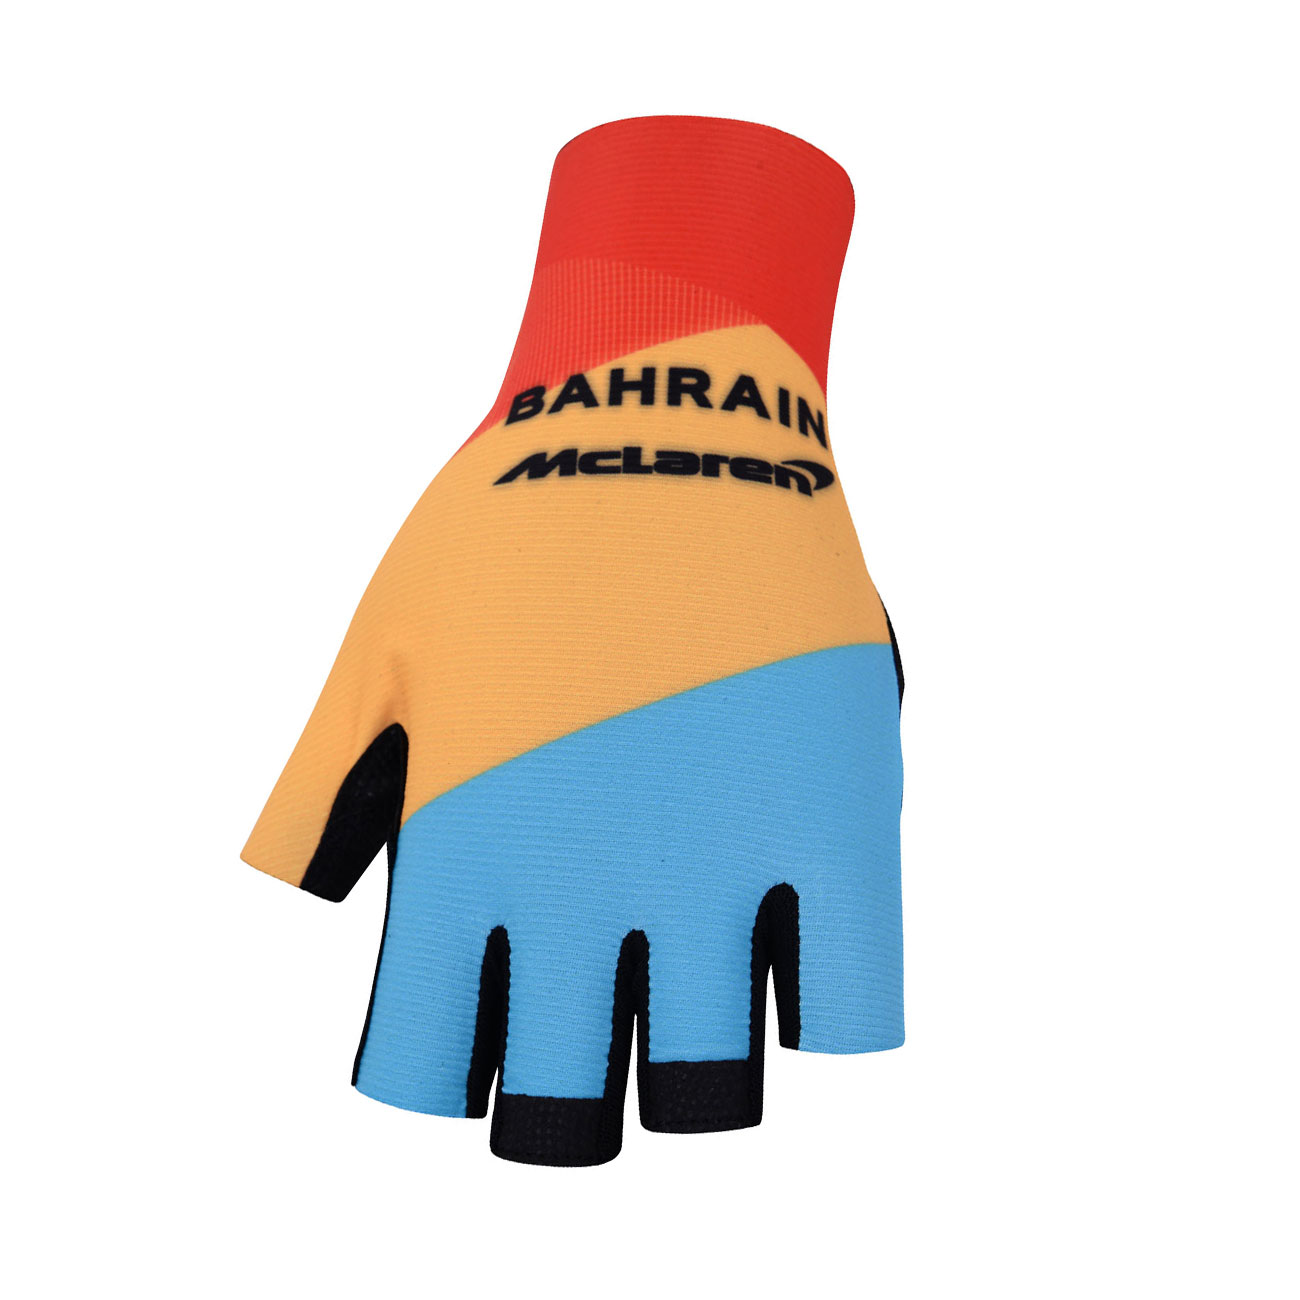 BONAVELO Kolarskie Rękawiczki Z Krótkimi Palcami - BAHRAIN MCLAREN - Czerwony/żółty